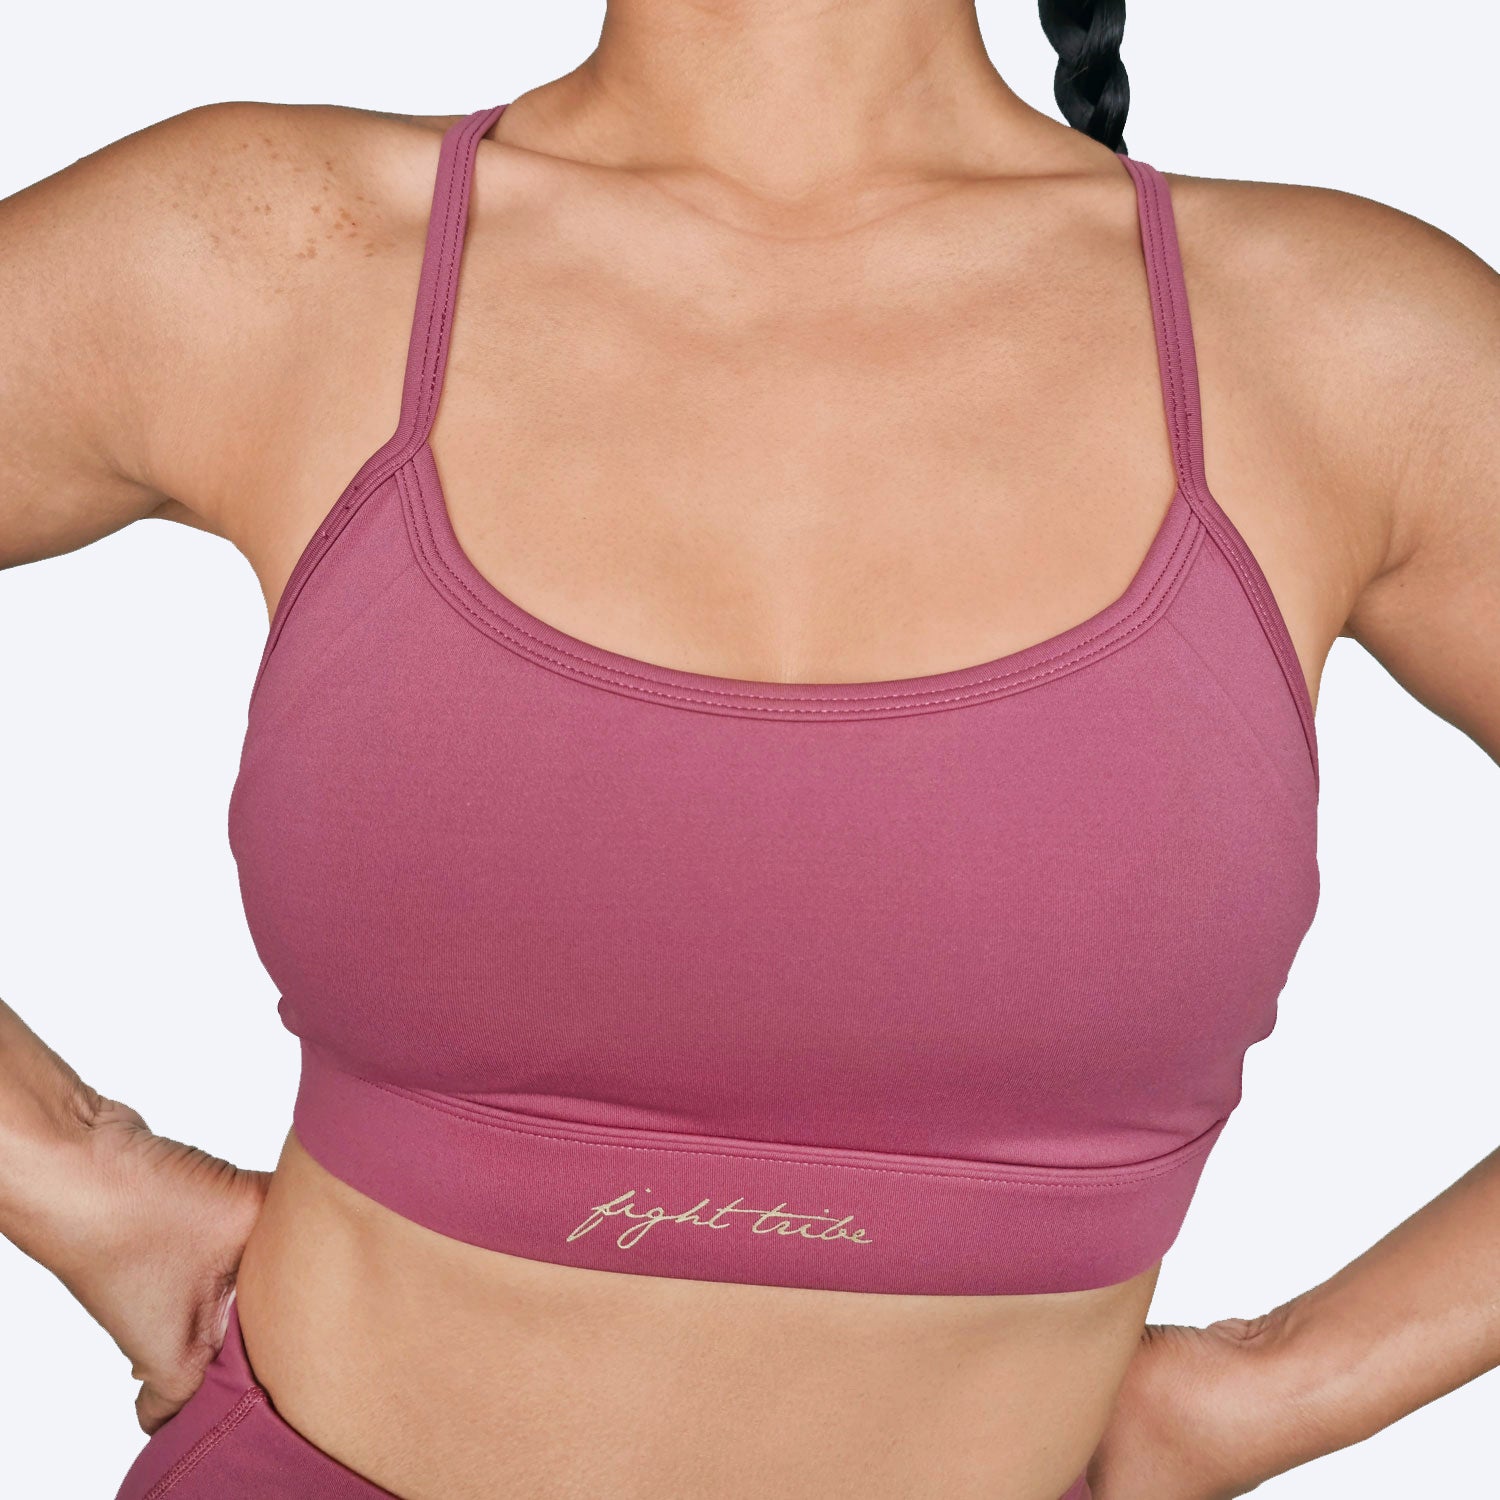 http://athenafightwear.com/cdn/shop/files/athena-fightwear-womens-eris-sports-bra-berry-front.jpg?v=1692529794&width=2048